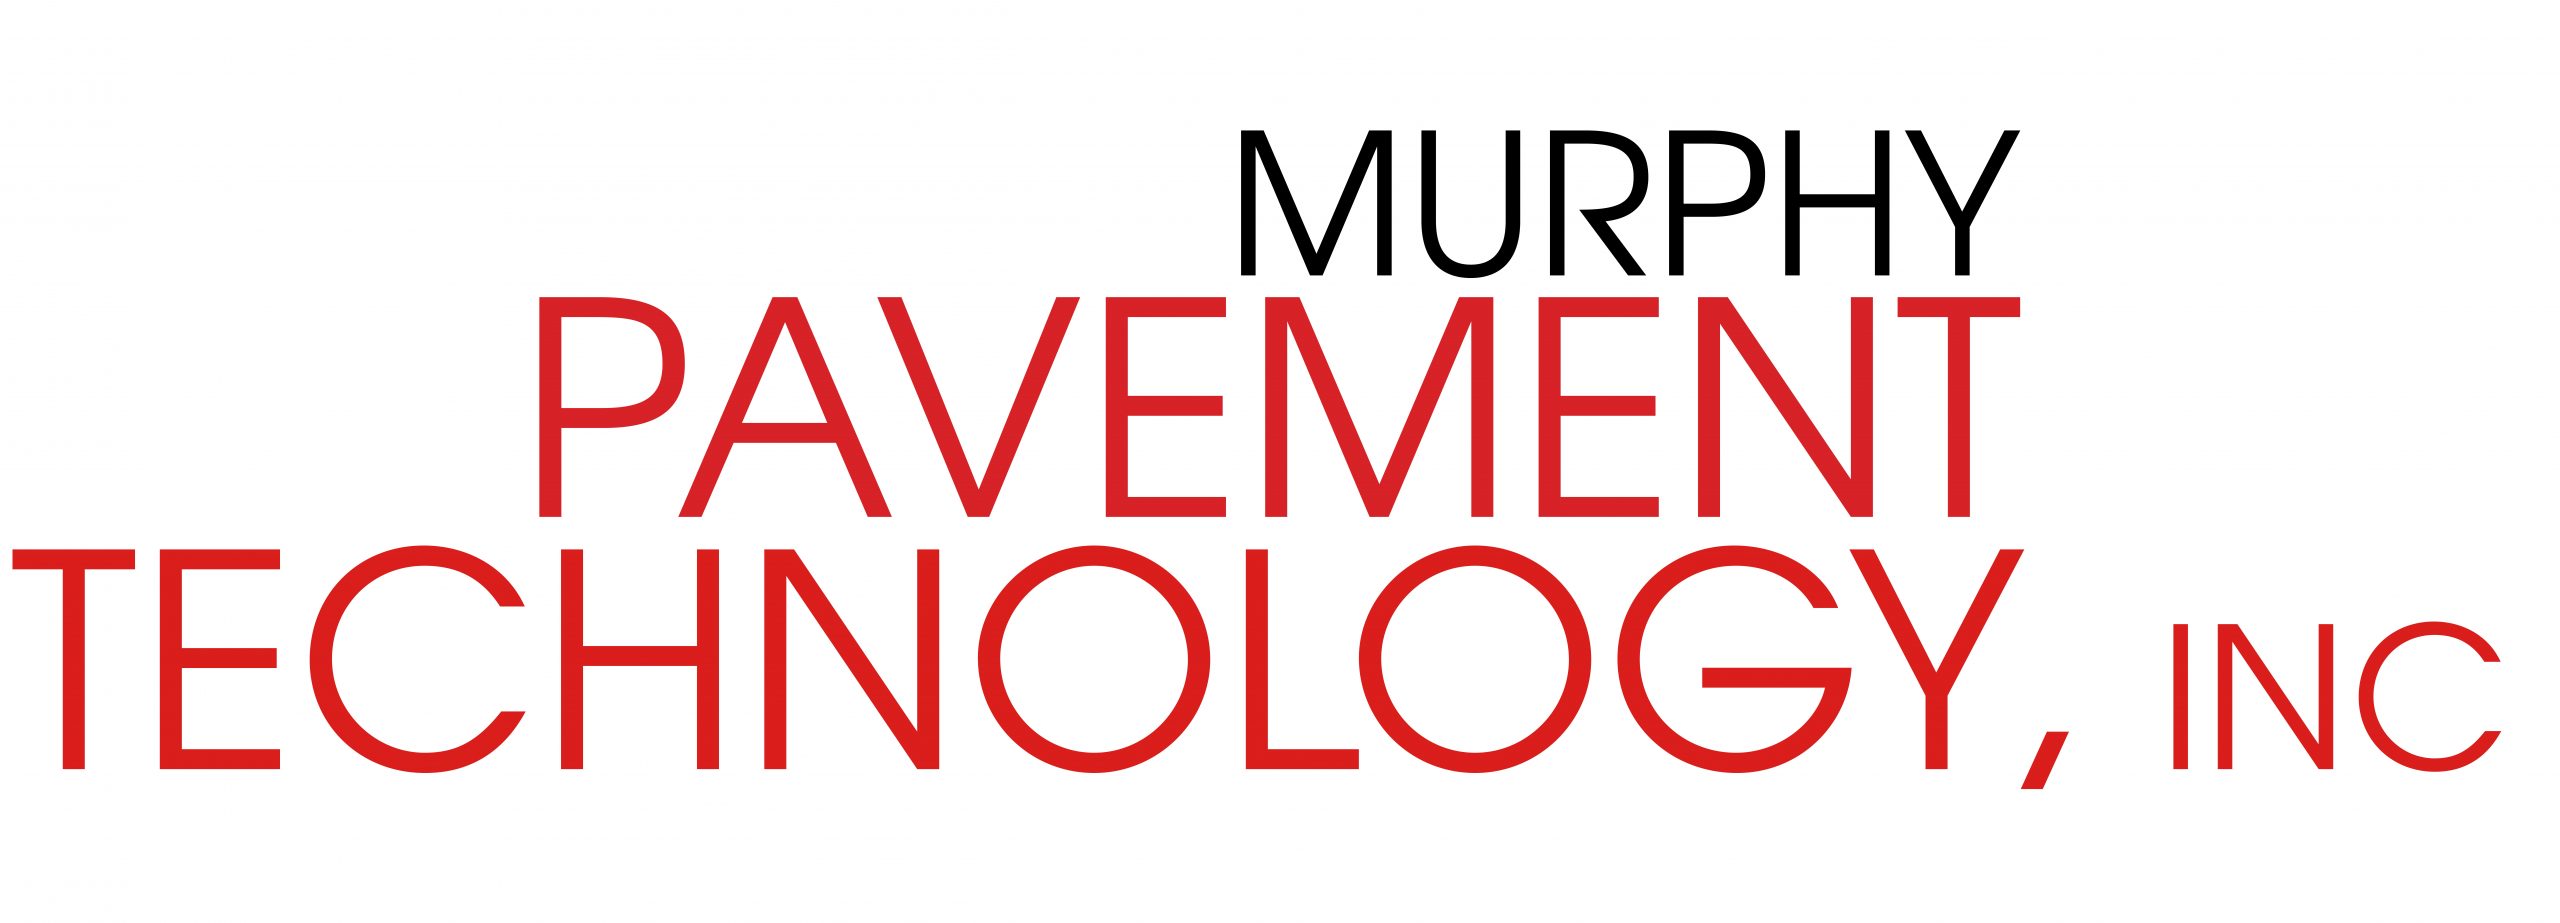 Murphy Pavement Technology